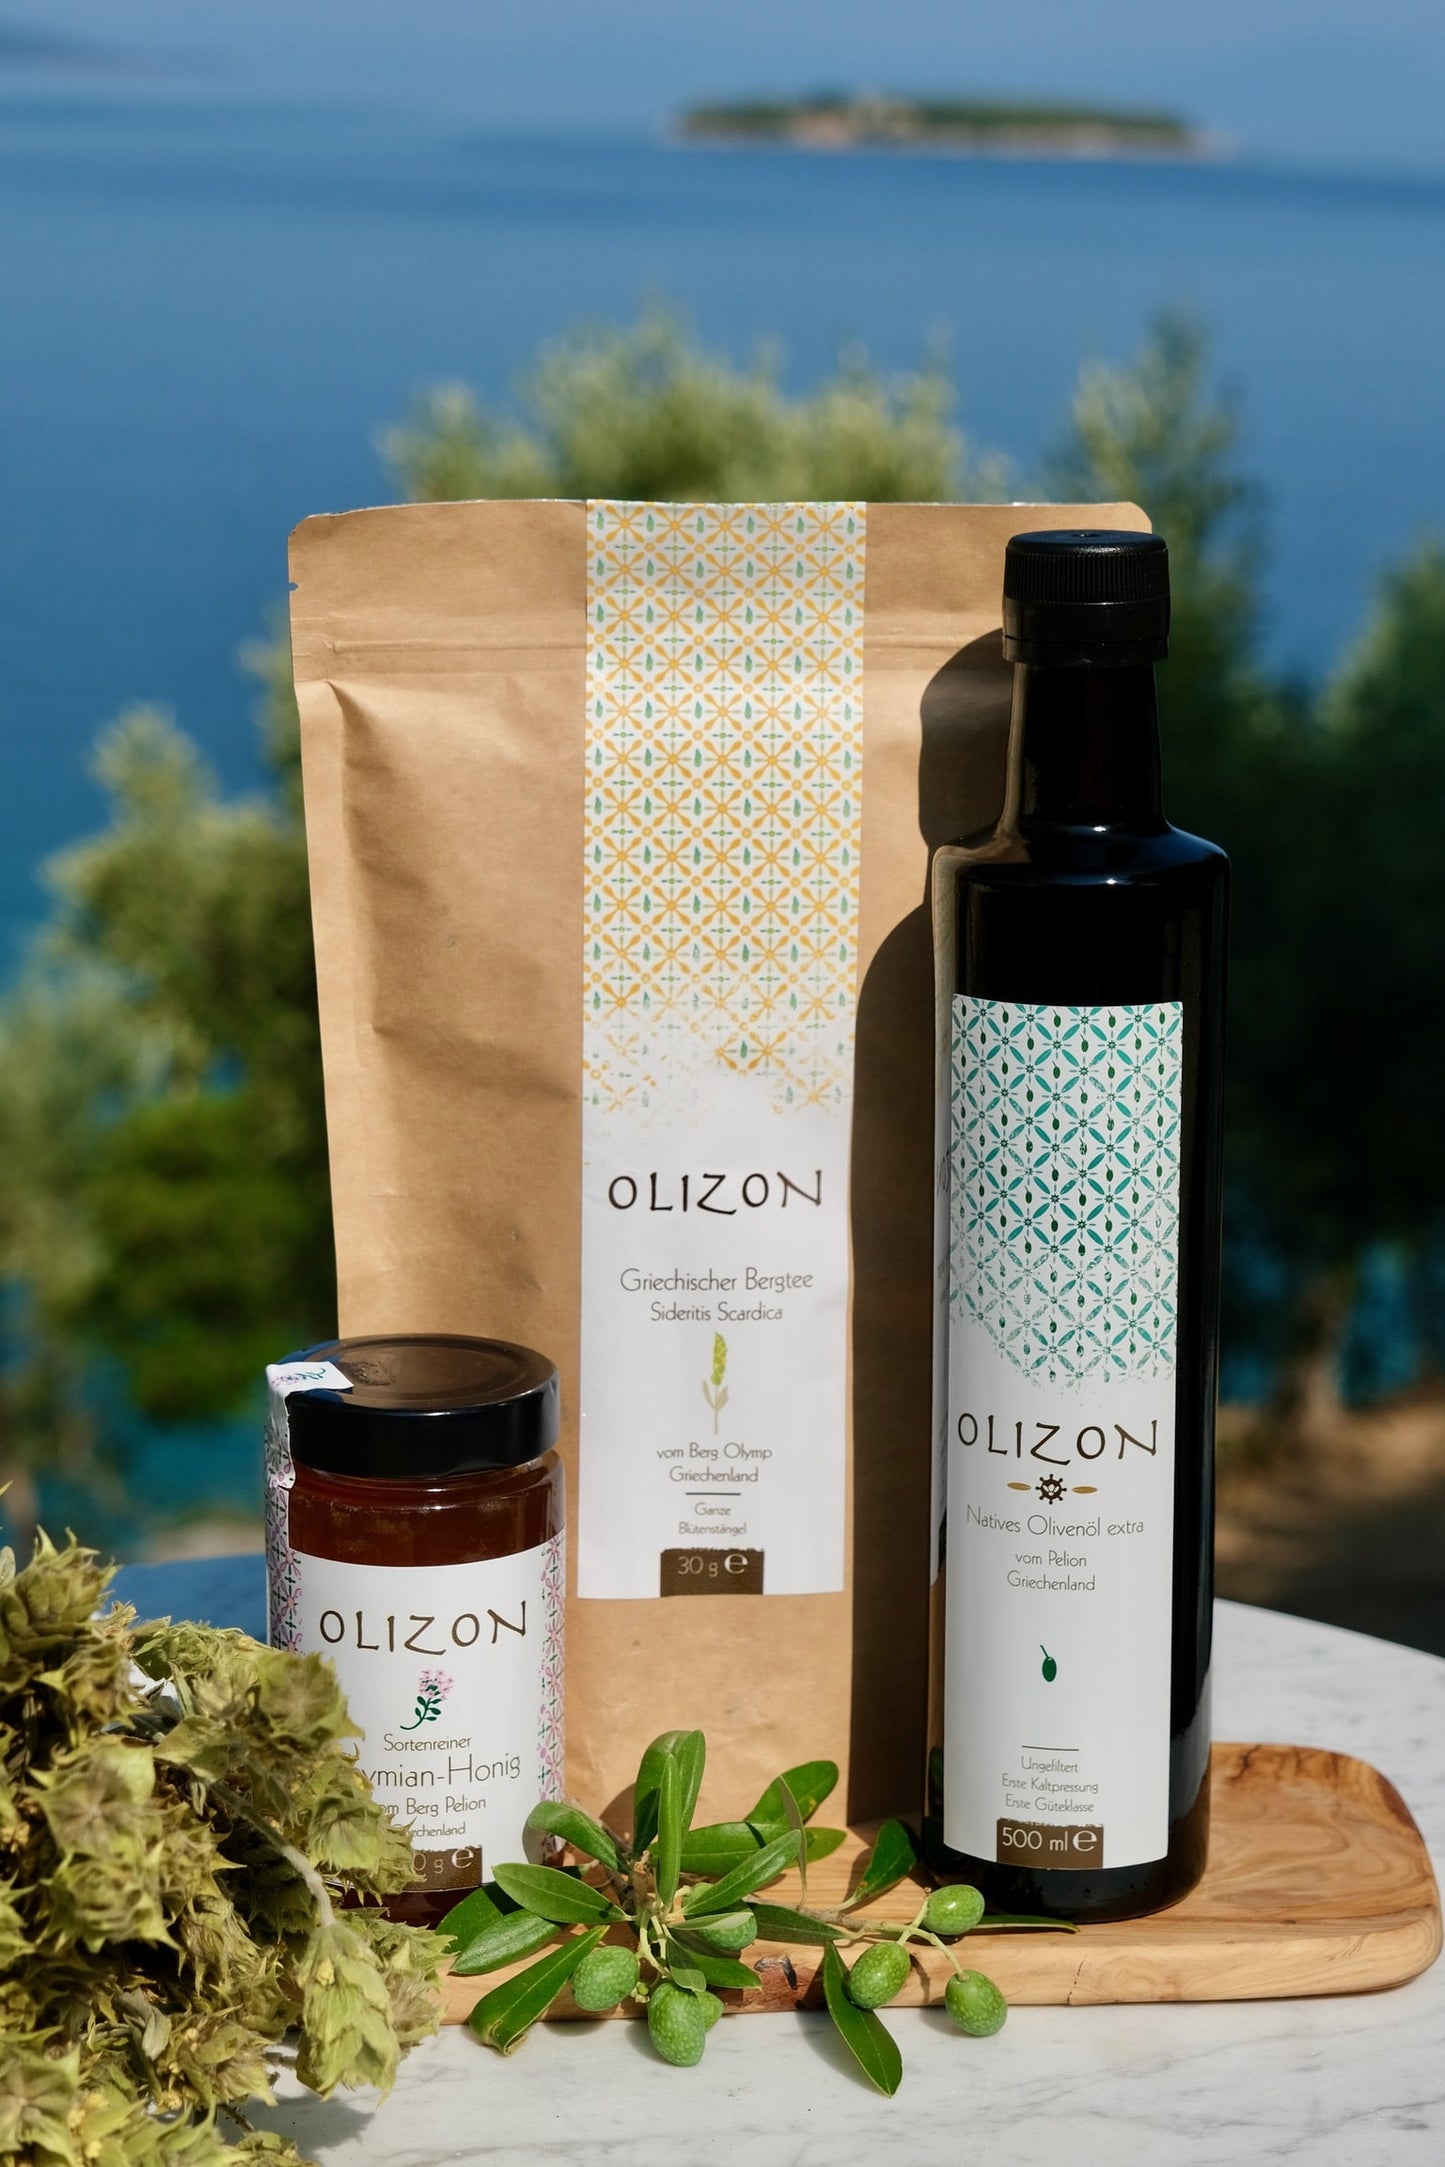 Olizopn Sortimentsbox mit 500 ml extra nativem Olivenöl, 300g Thymian ODER Erdbeerbaumhonig, 30g griechischem Bergtee und einem kleinen Frühstücksbrett aus Olivenholz